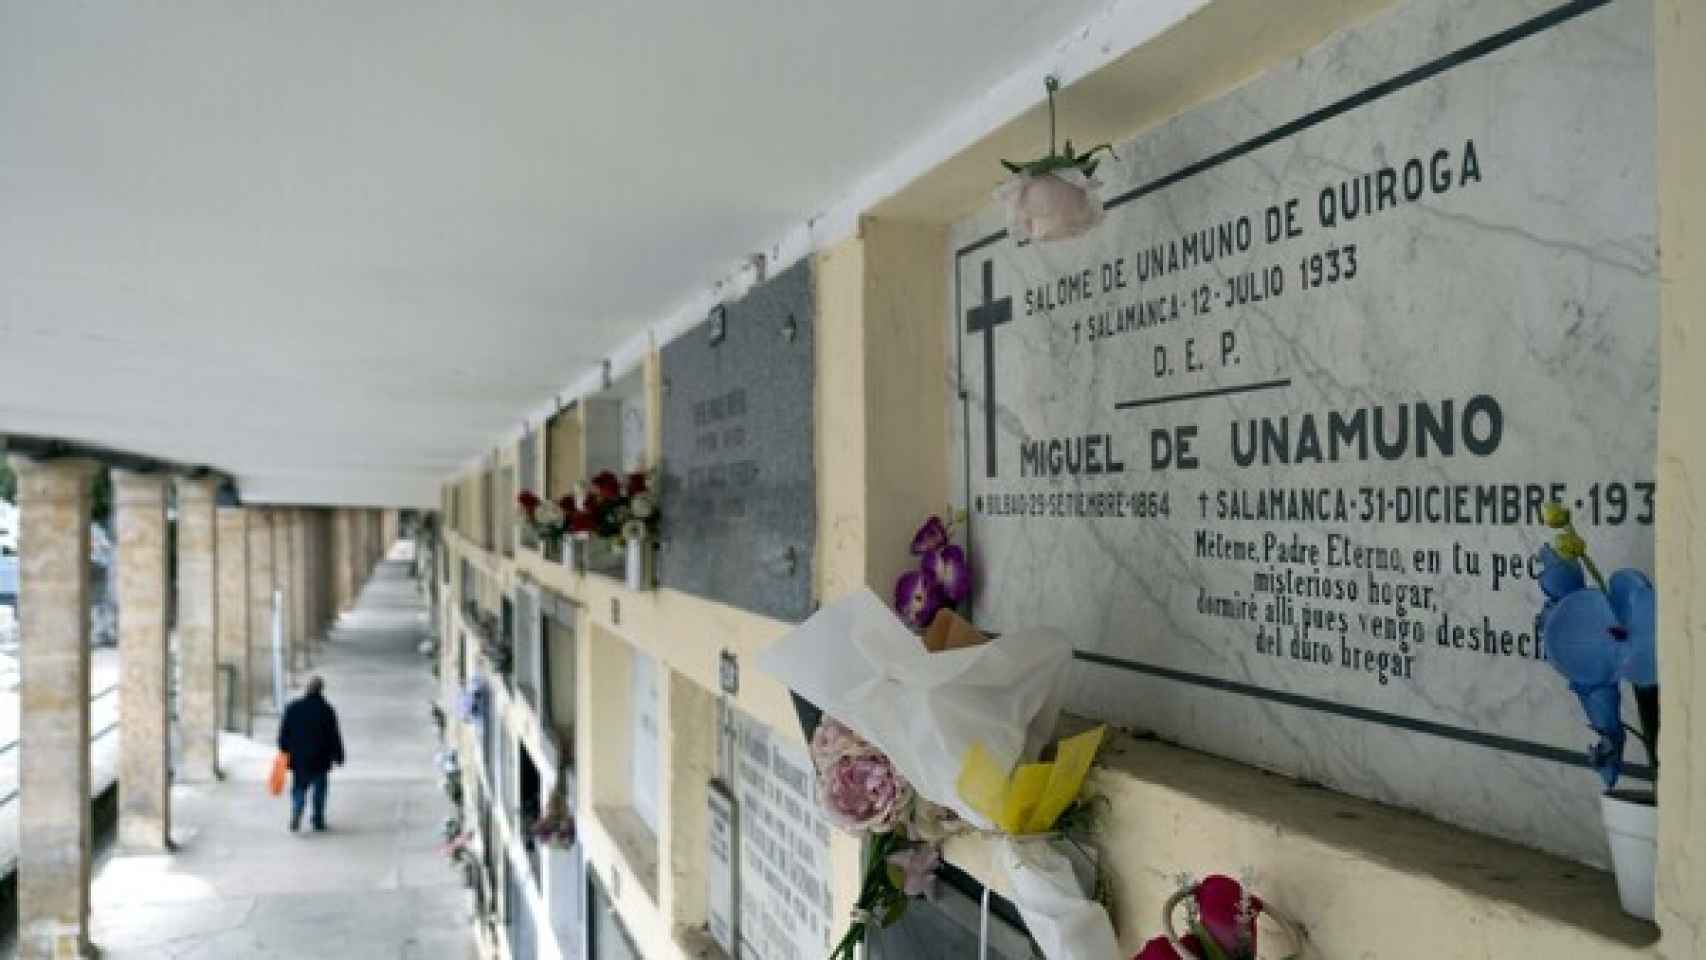 Tumba de Miguel de Unamuno en el cementerio de Salamanca